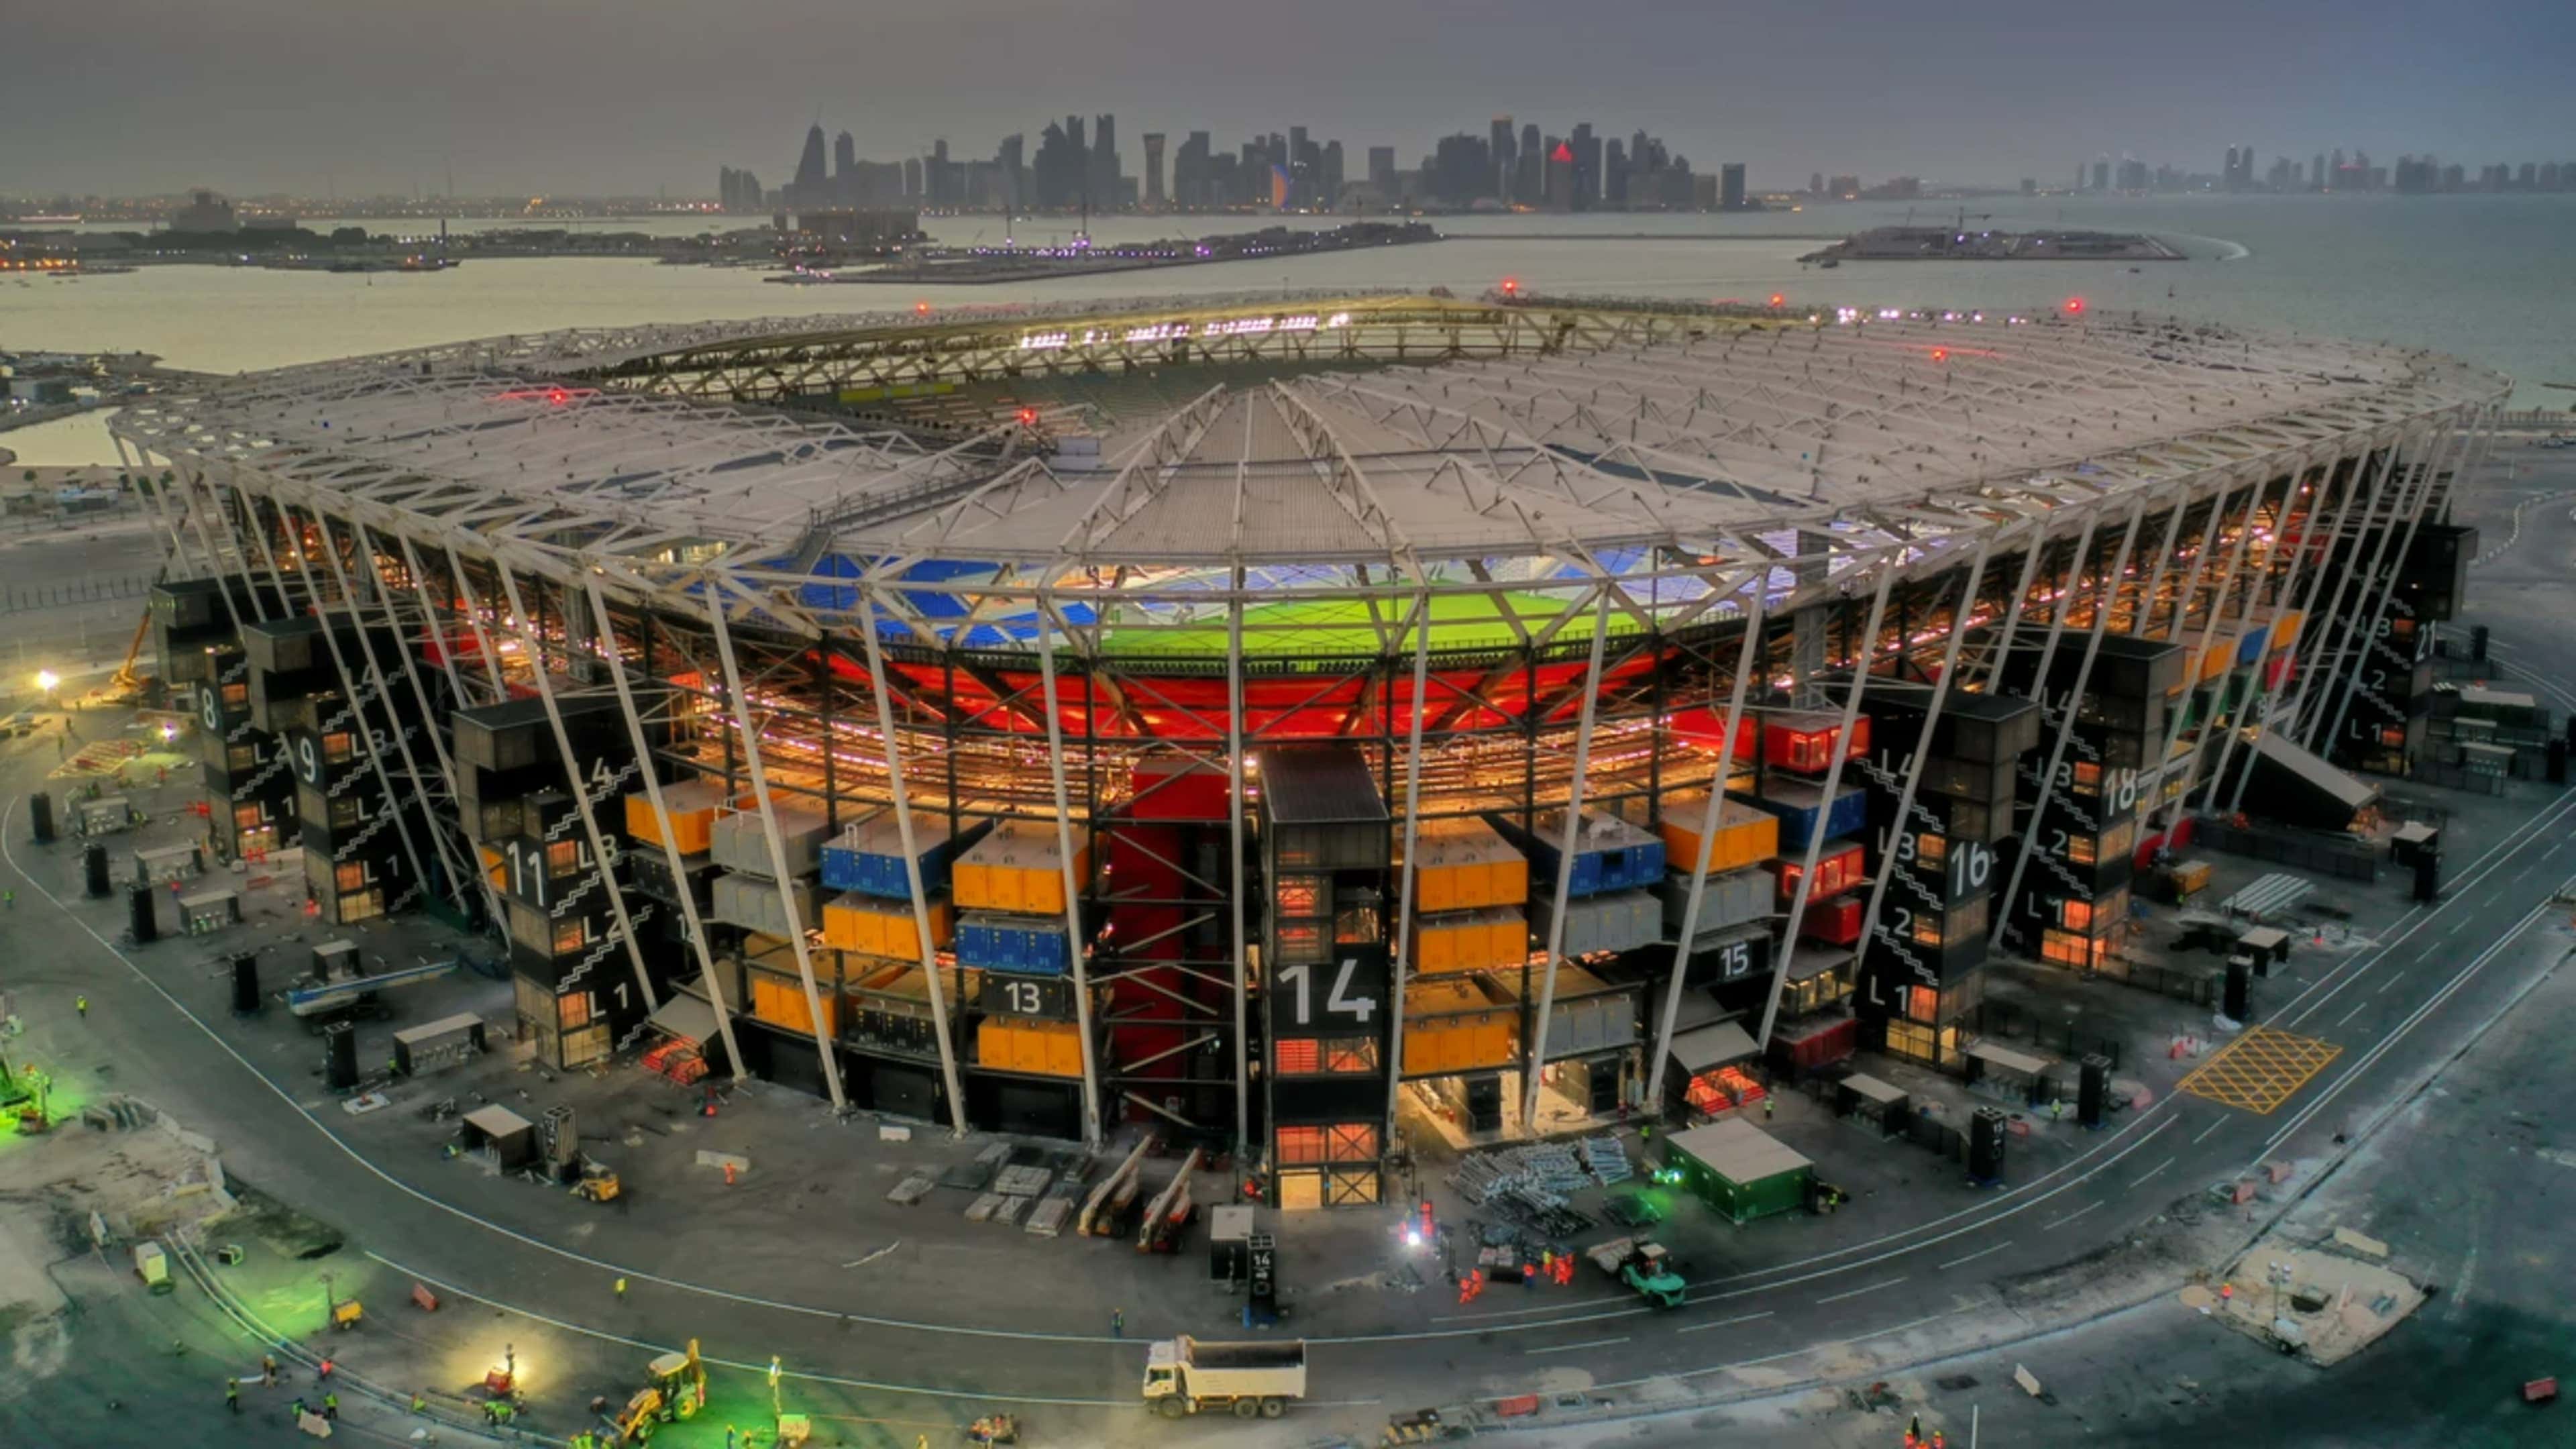 VÍDEO: Conheça o estádio da final da Copa do Mundo do Catar por dentro